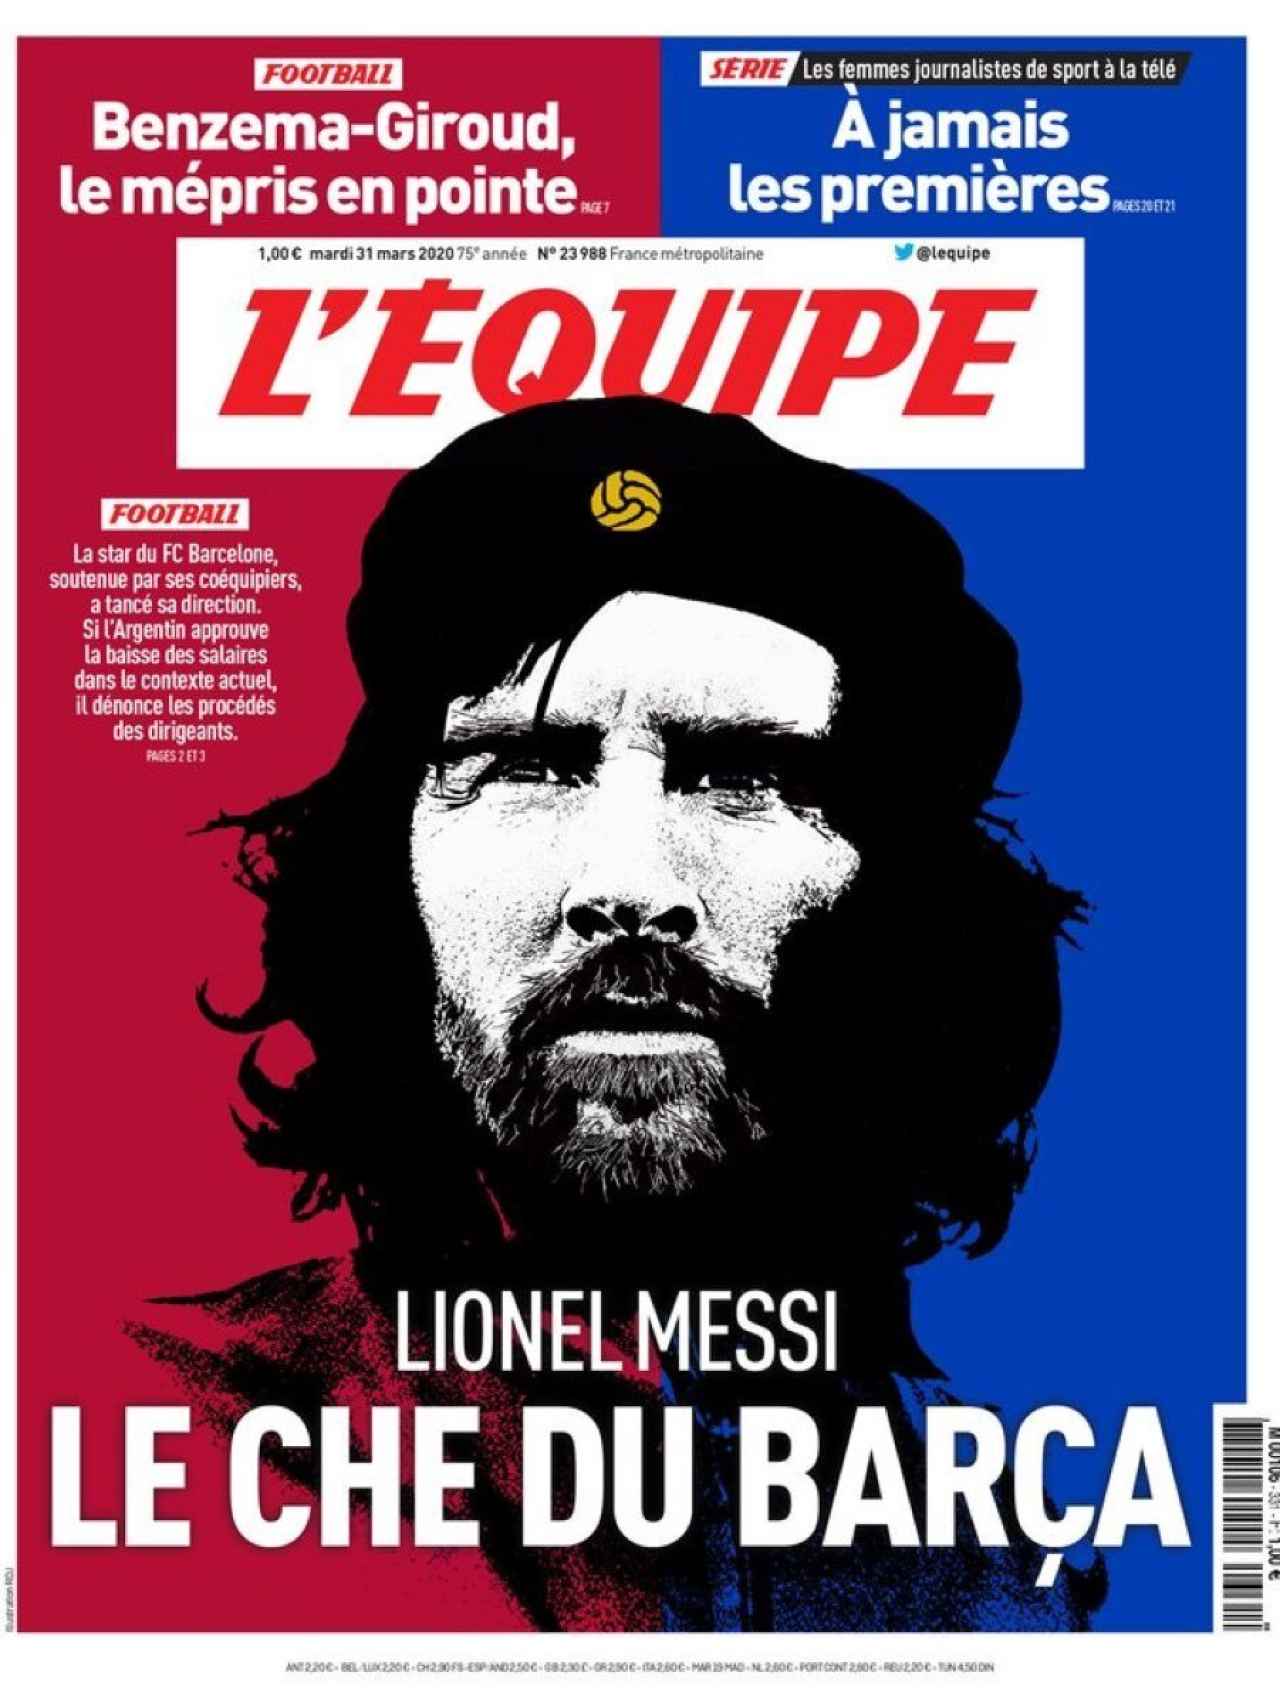 La portada del diario L'Équipe (31/03/2020)